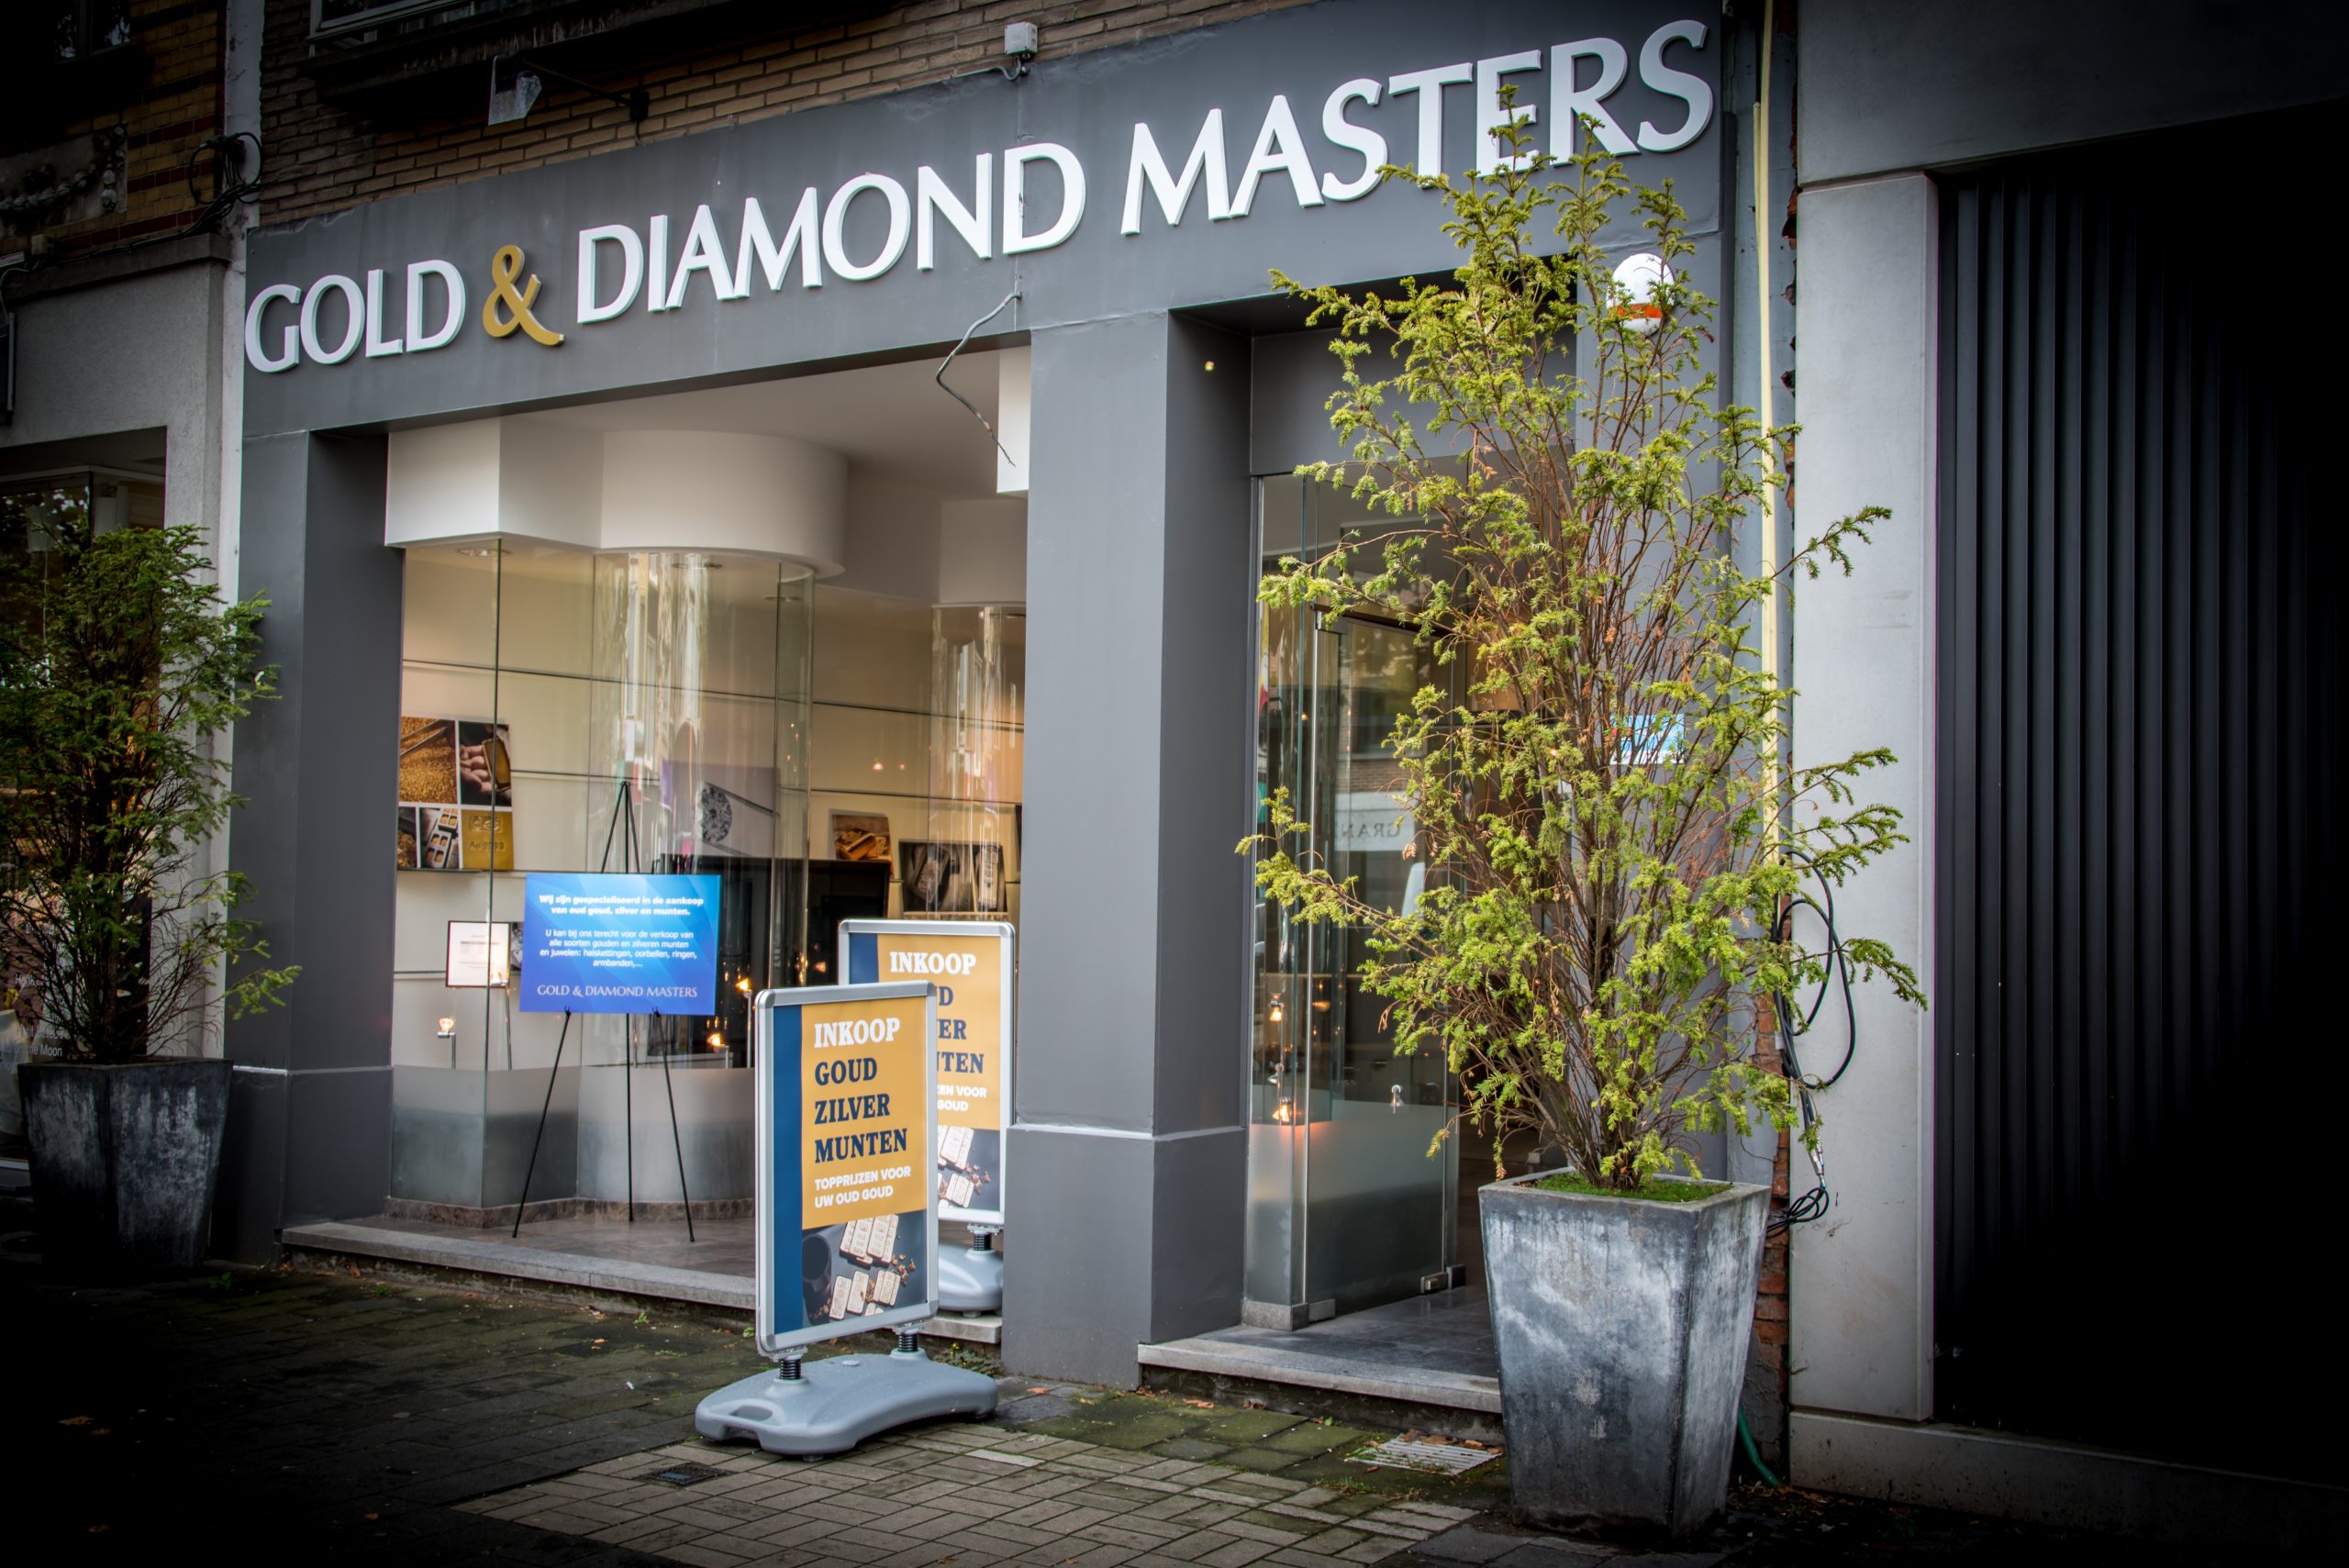 Gold & Diamond Masters – Inkoop Goud, Zilver en Munten